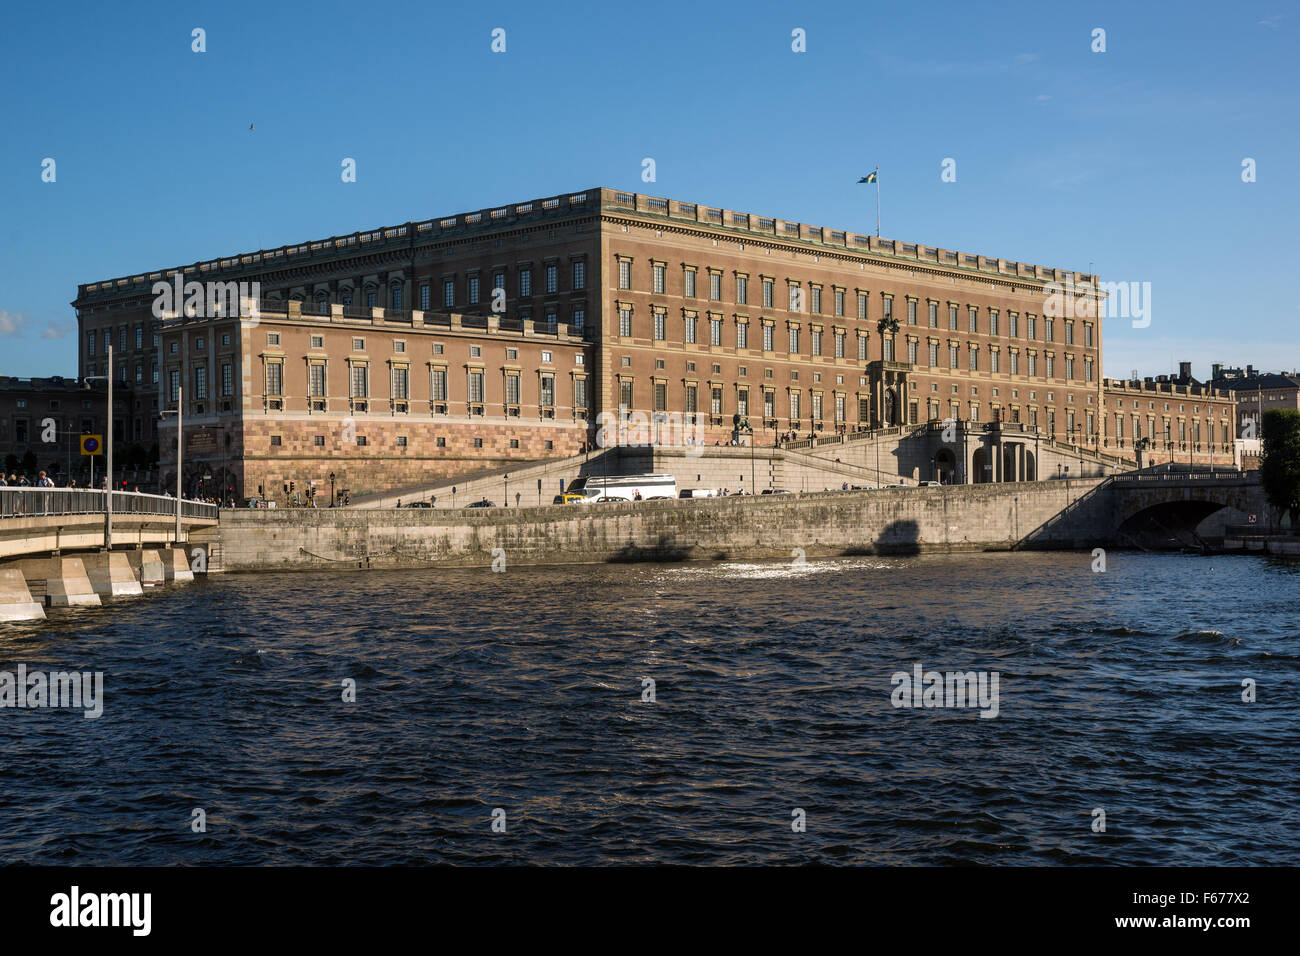 Royal Palace, la résidence officielle et le grand palais royal du monarque suédois, Stockholm, Suède Banque D'Images